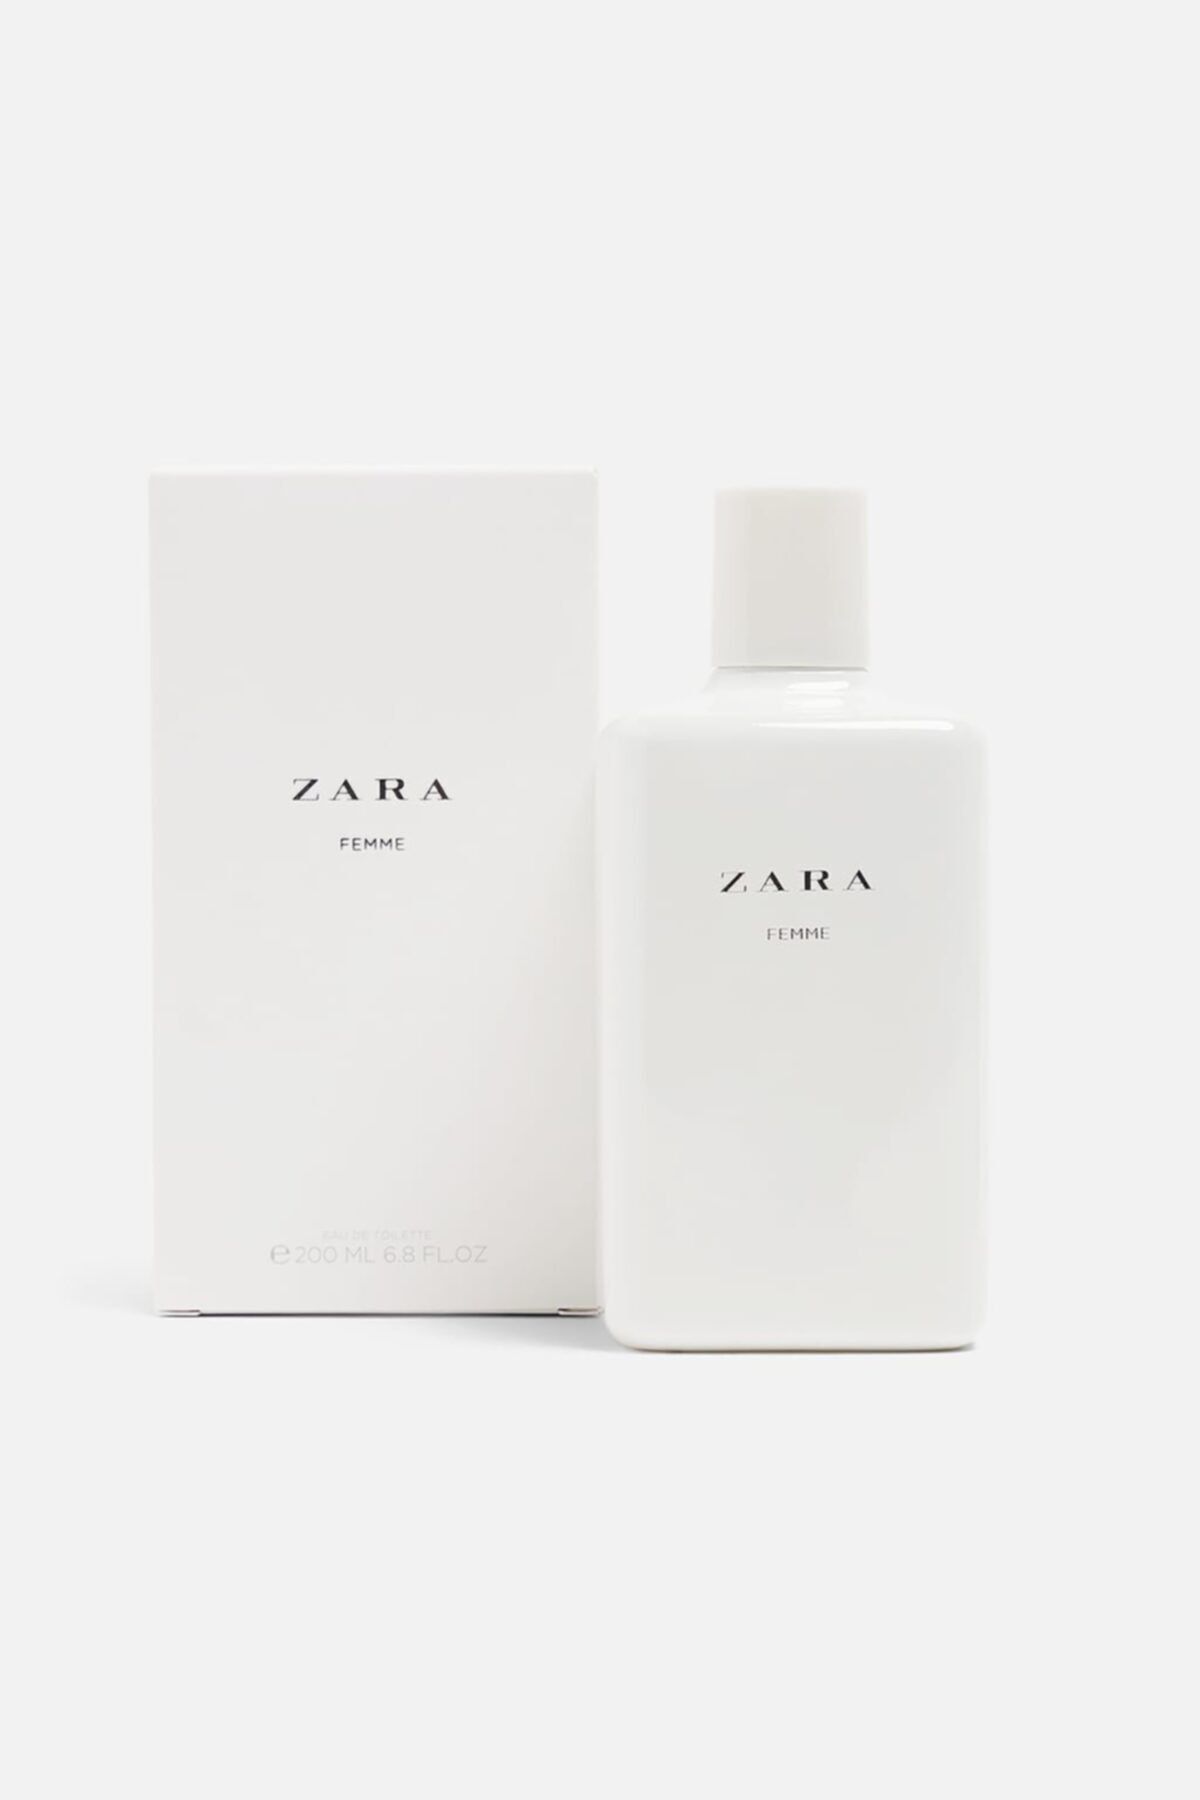 Zara Femme 200 ml Fiyatı, Yorumları ...